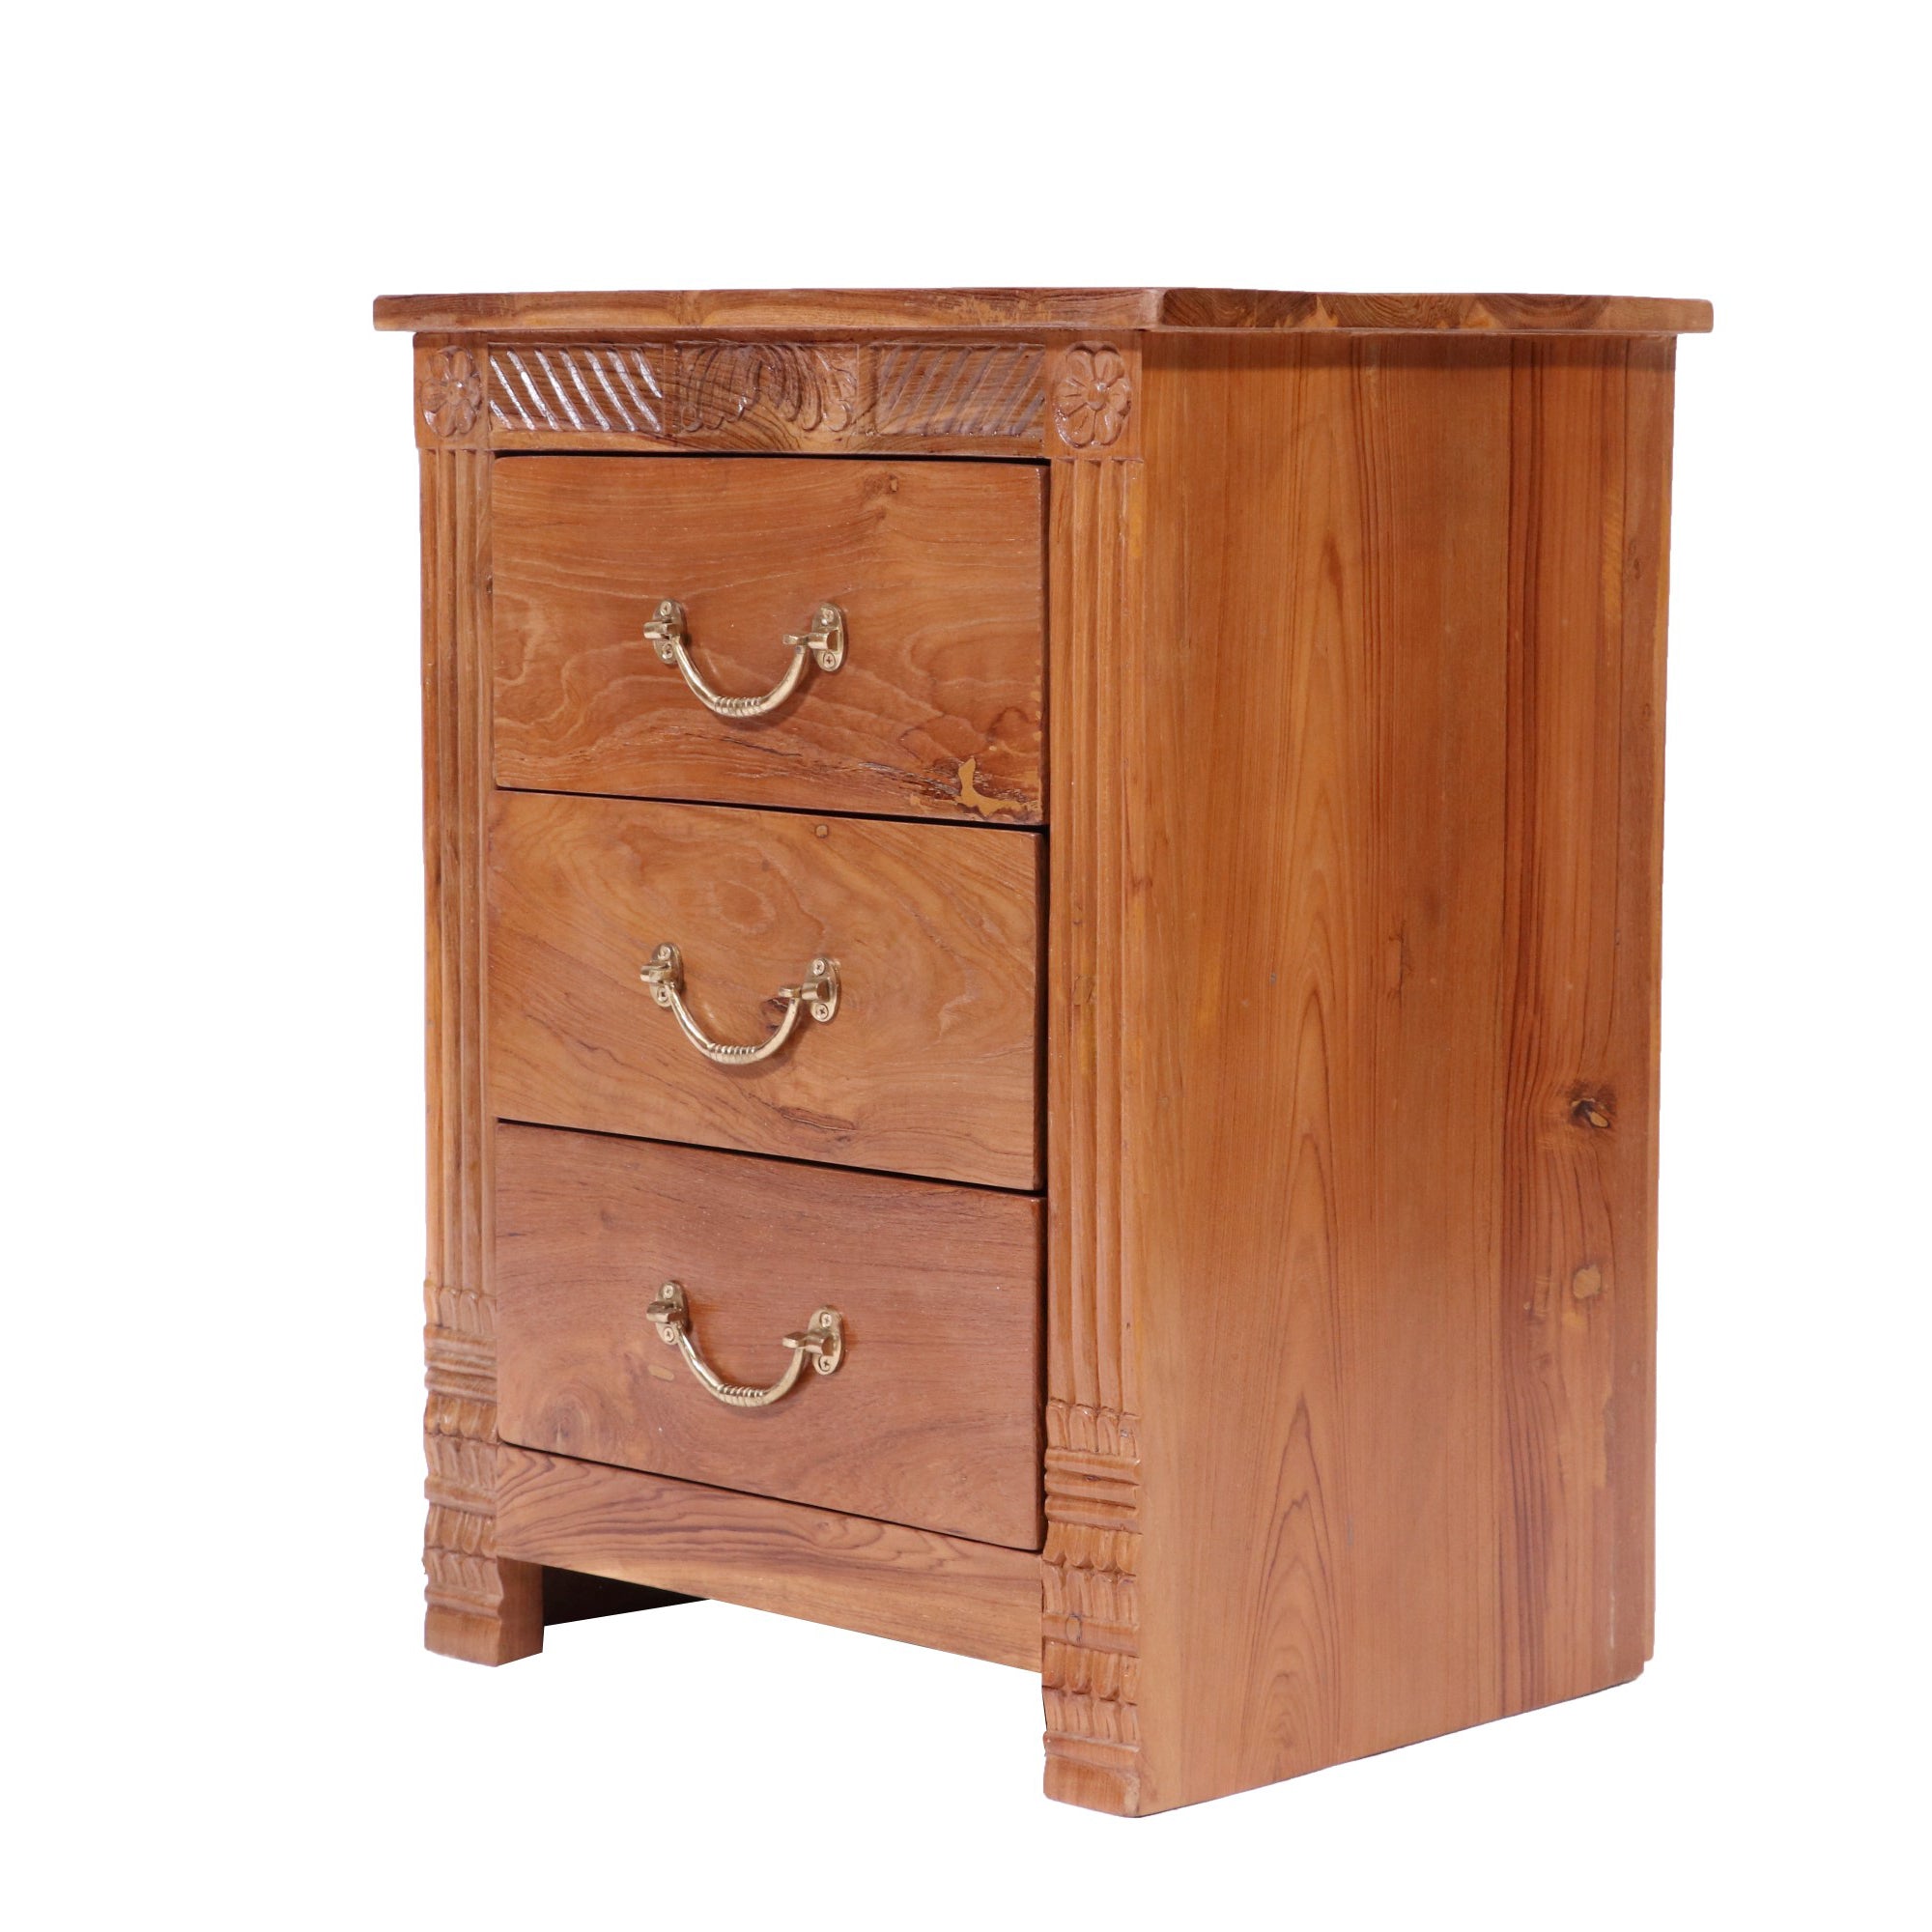 Folk concept Carved teak wood 3 drawer bedside Bedside